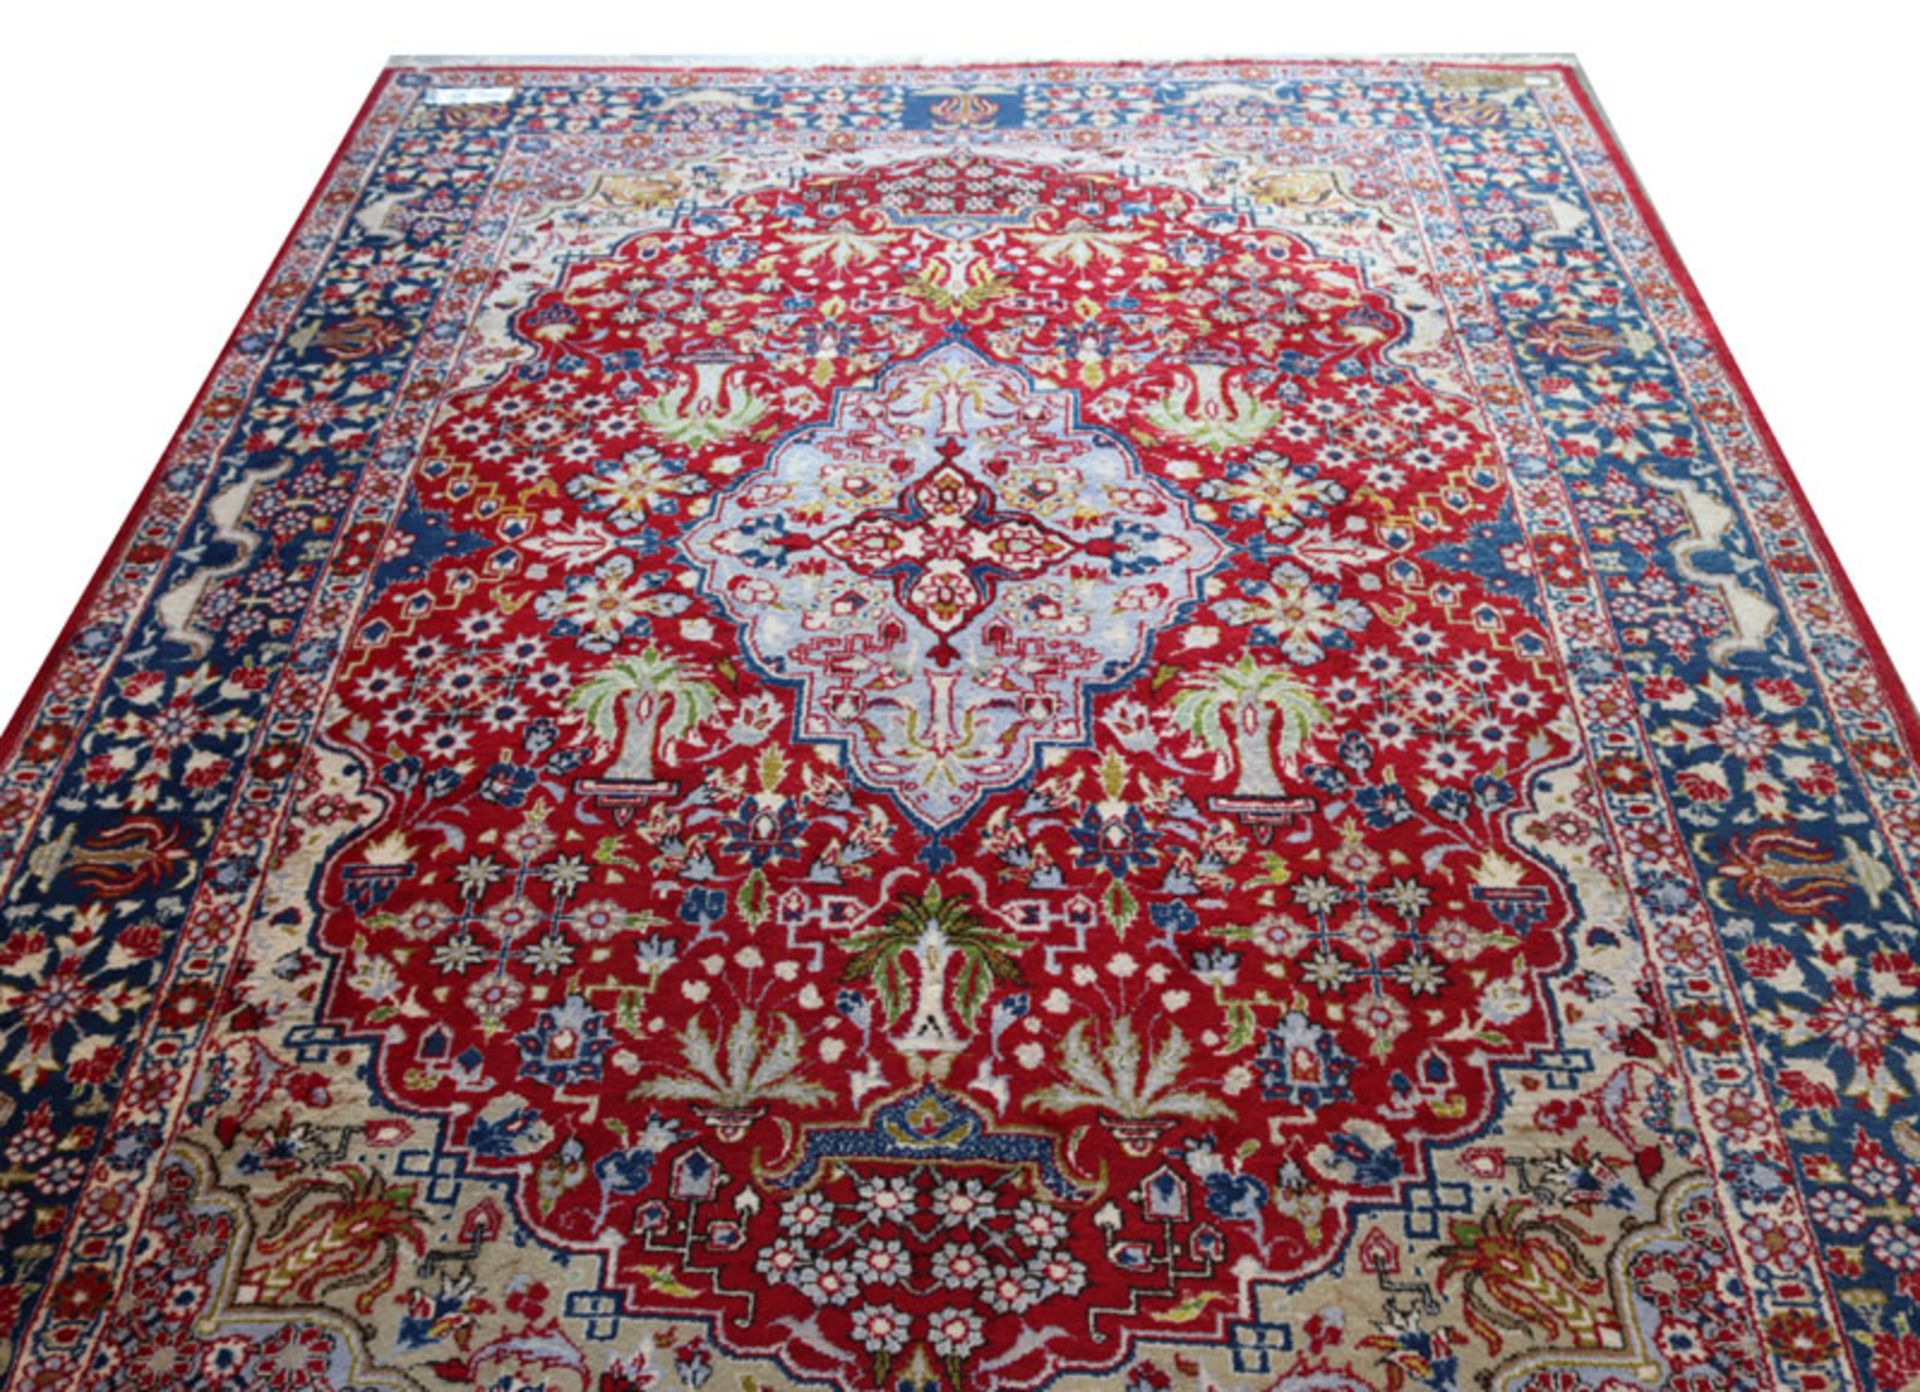 Teppich, Bidjar, rot/blau/beige, Gebrauchsspuren, teils beschädigt, 270 cm x 200 cm